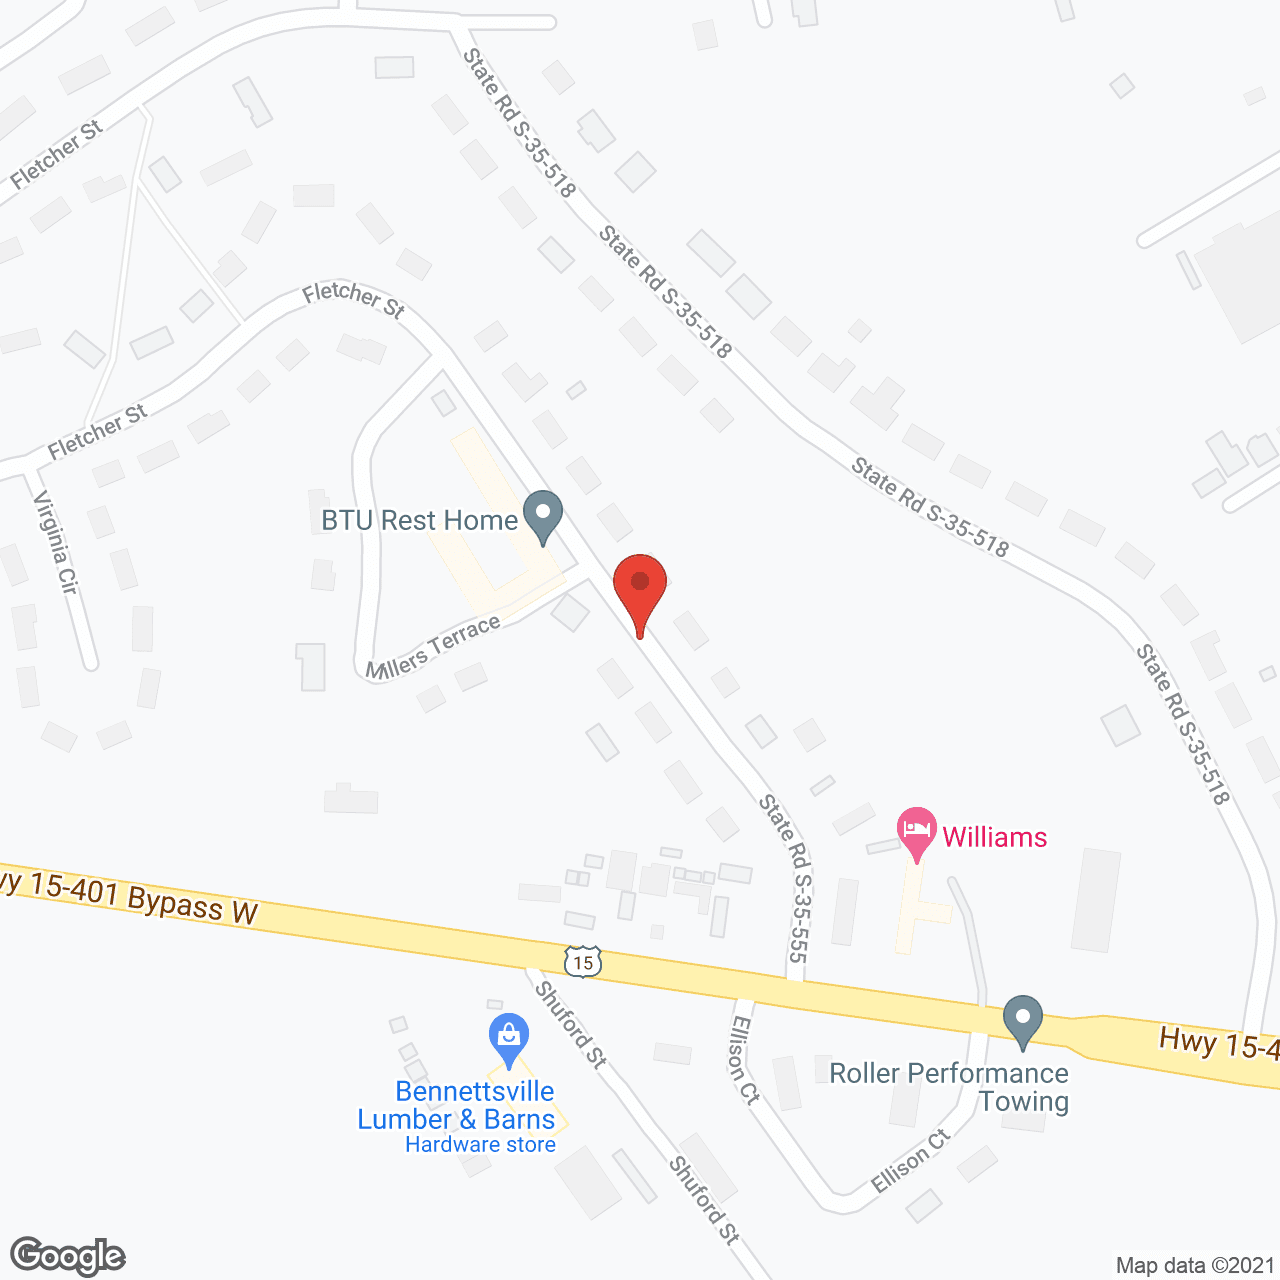 BTU Rest Home in google map